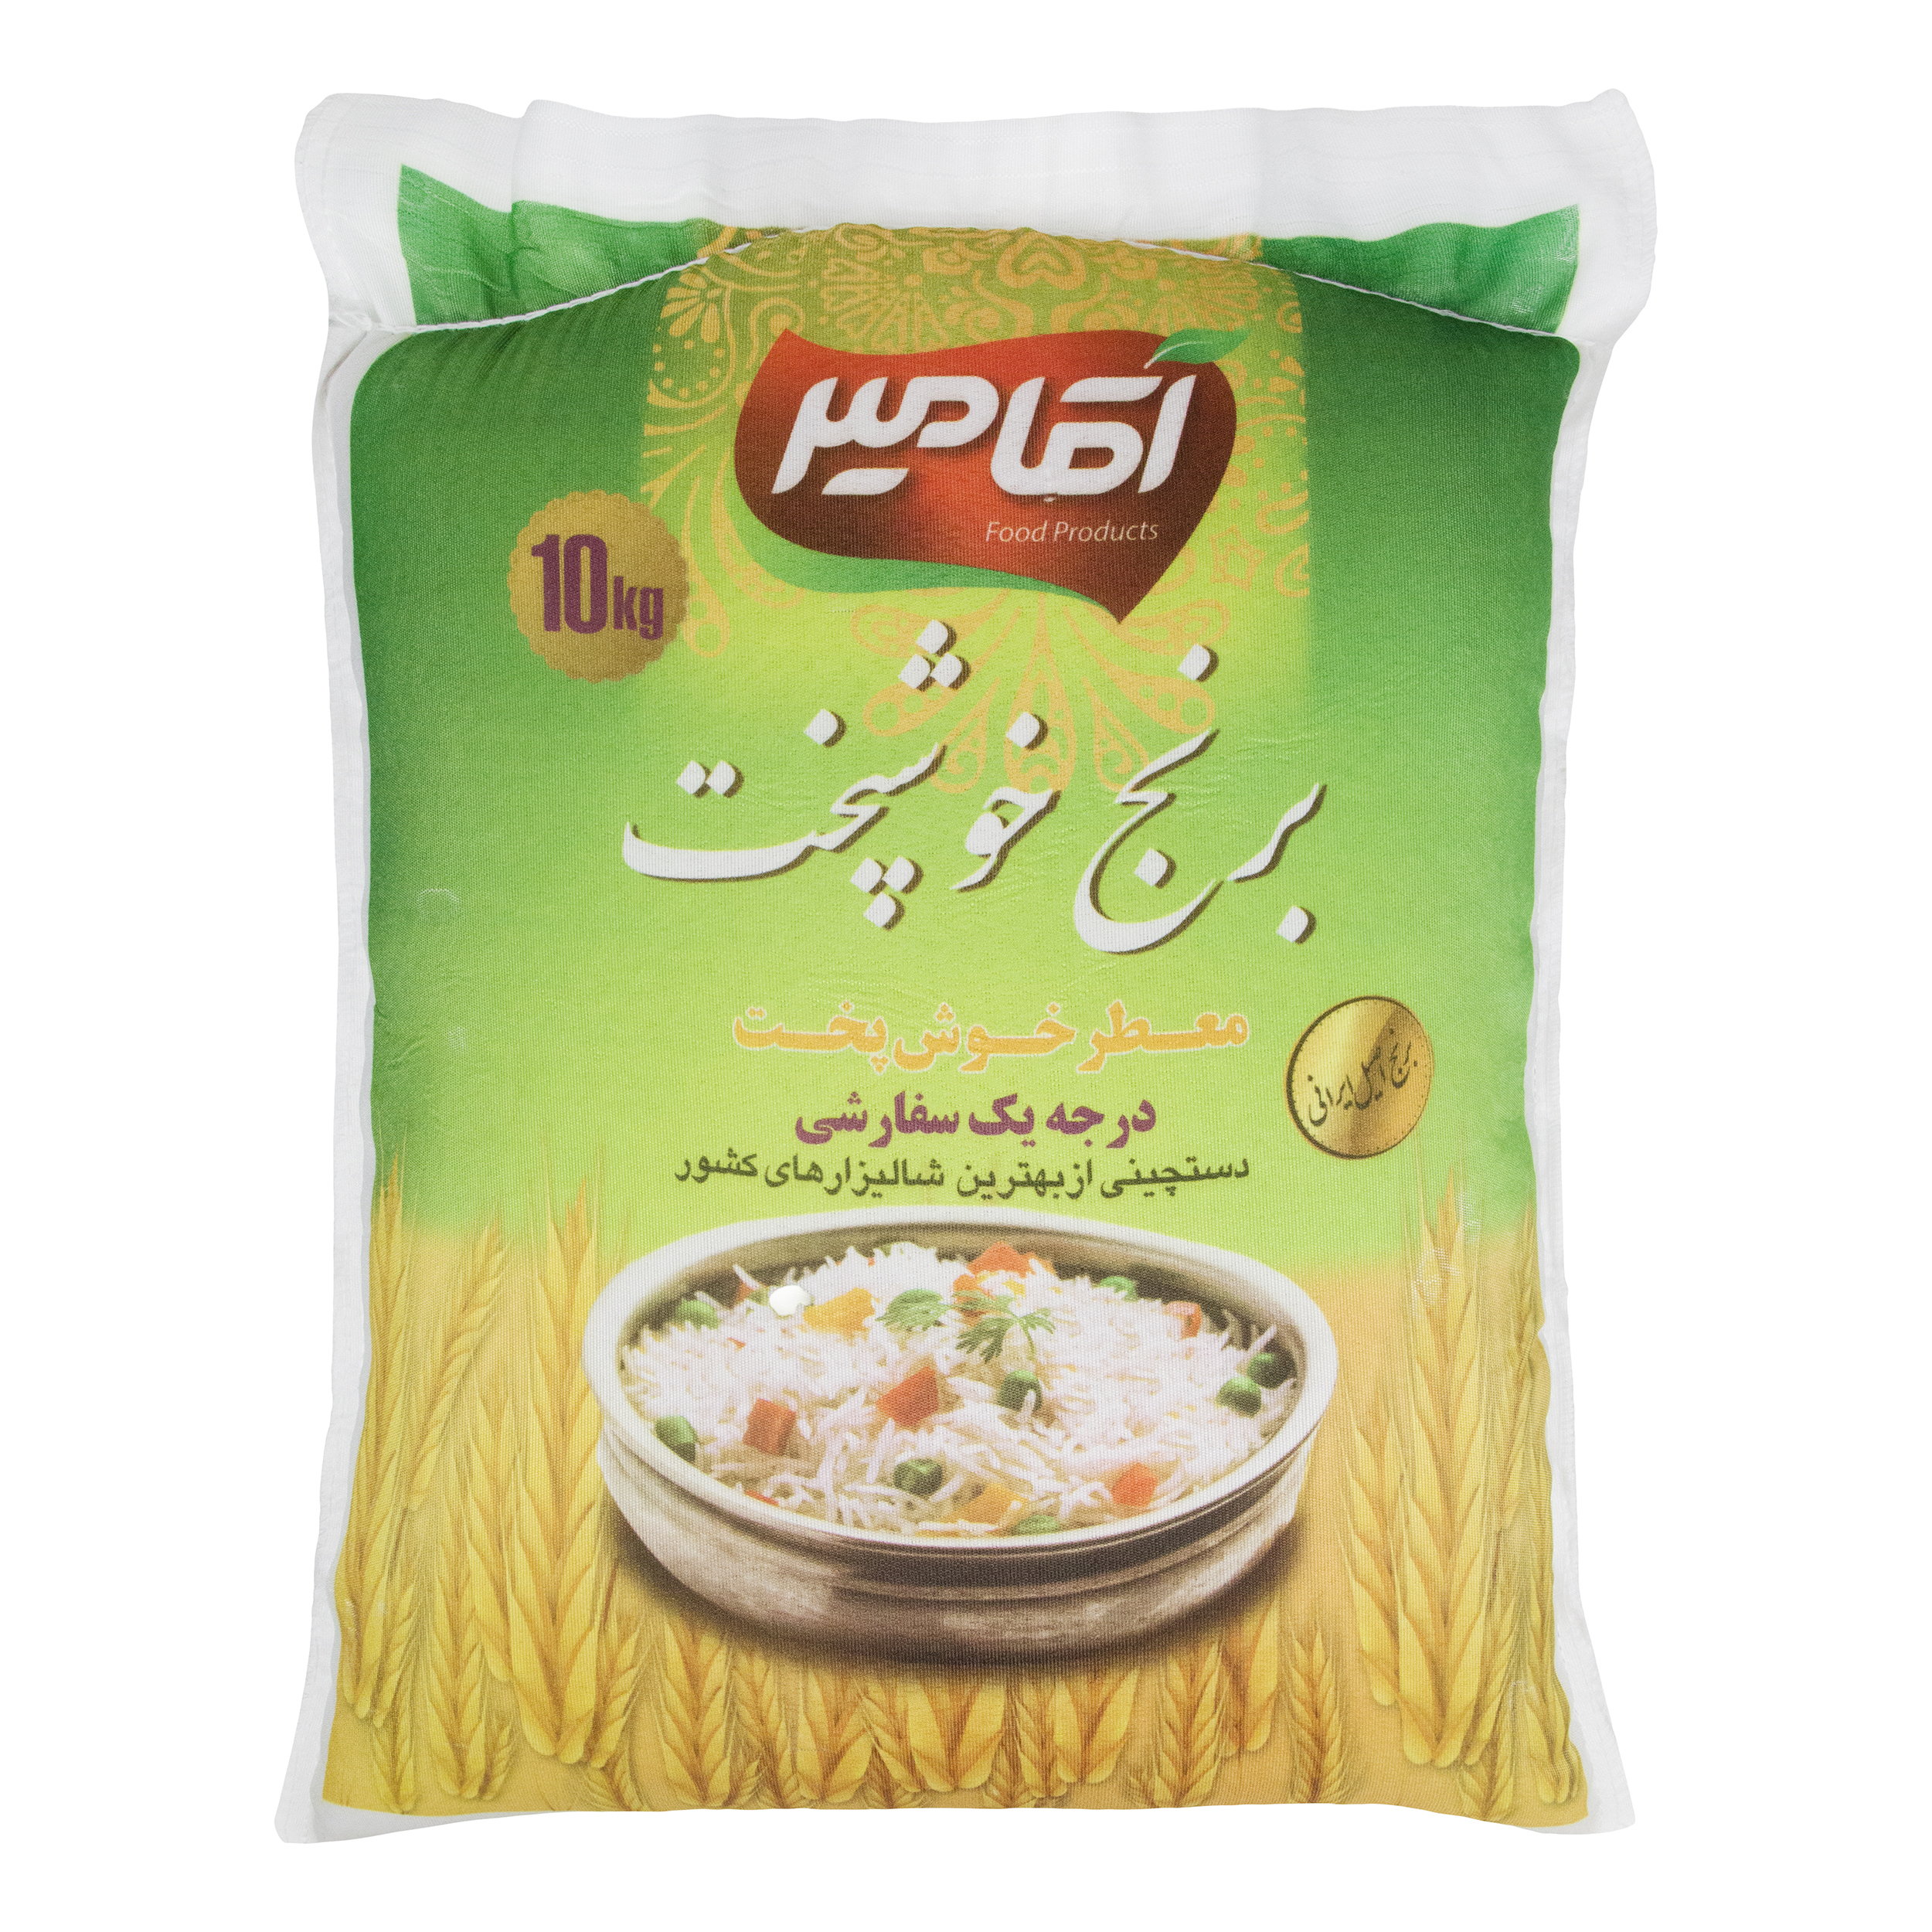 نکته خرید - قیمت روز برنج خوشپخت آقامیر - 10 کیلوگرم خرید